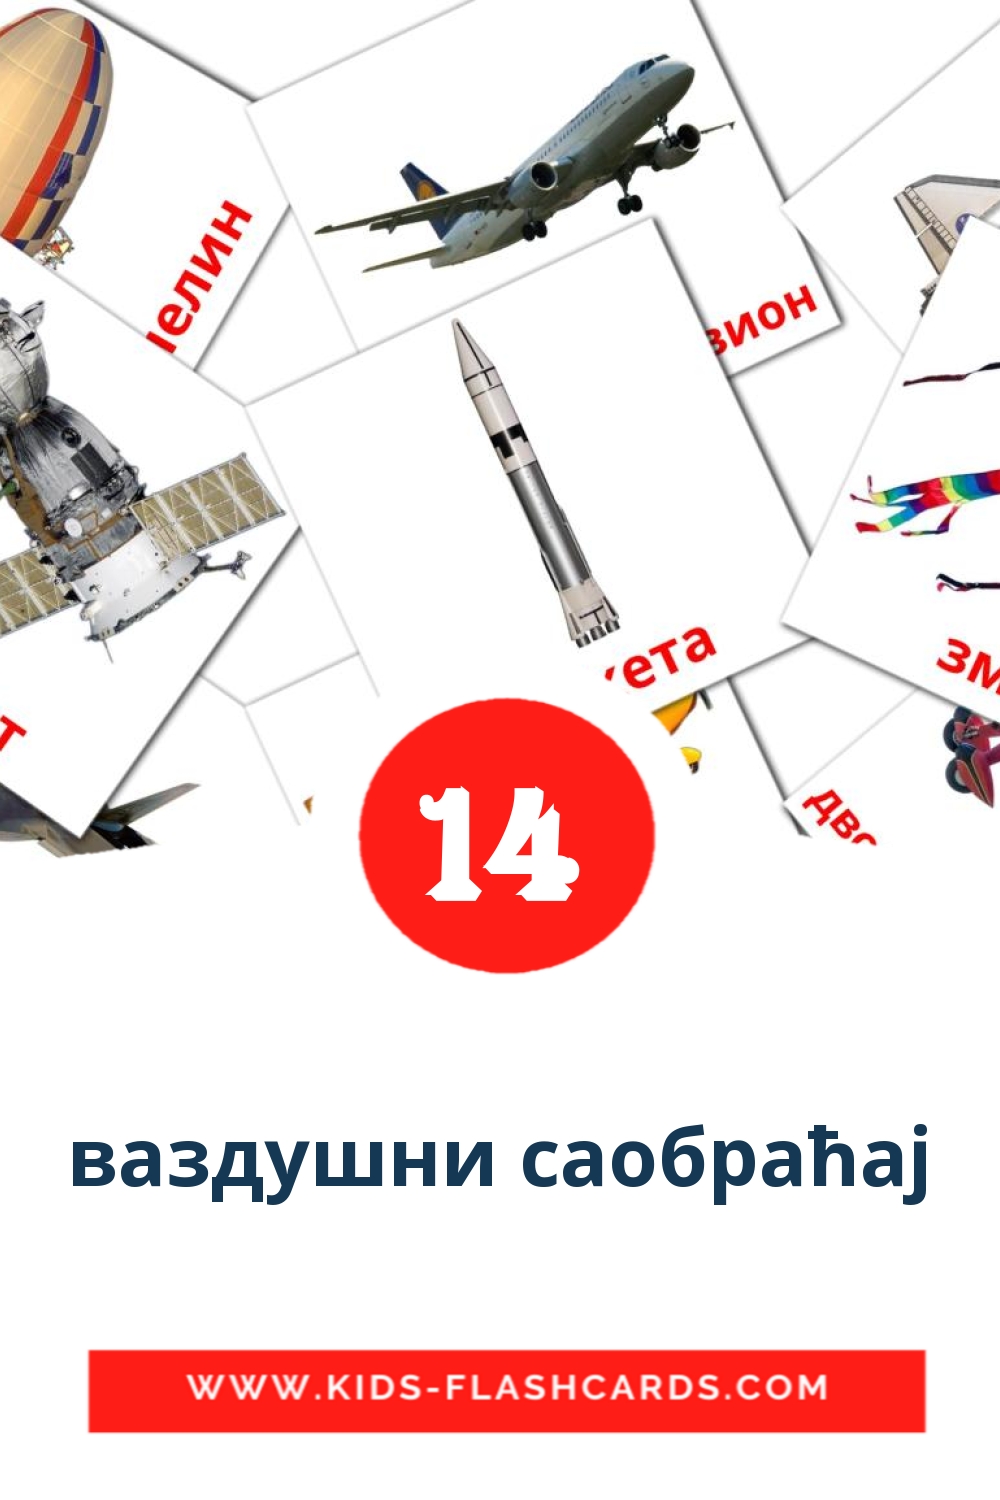 14 cartes illustrées de ваздушни саобраћај pour la maternelle en serbe(cyrillique)